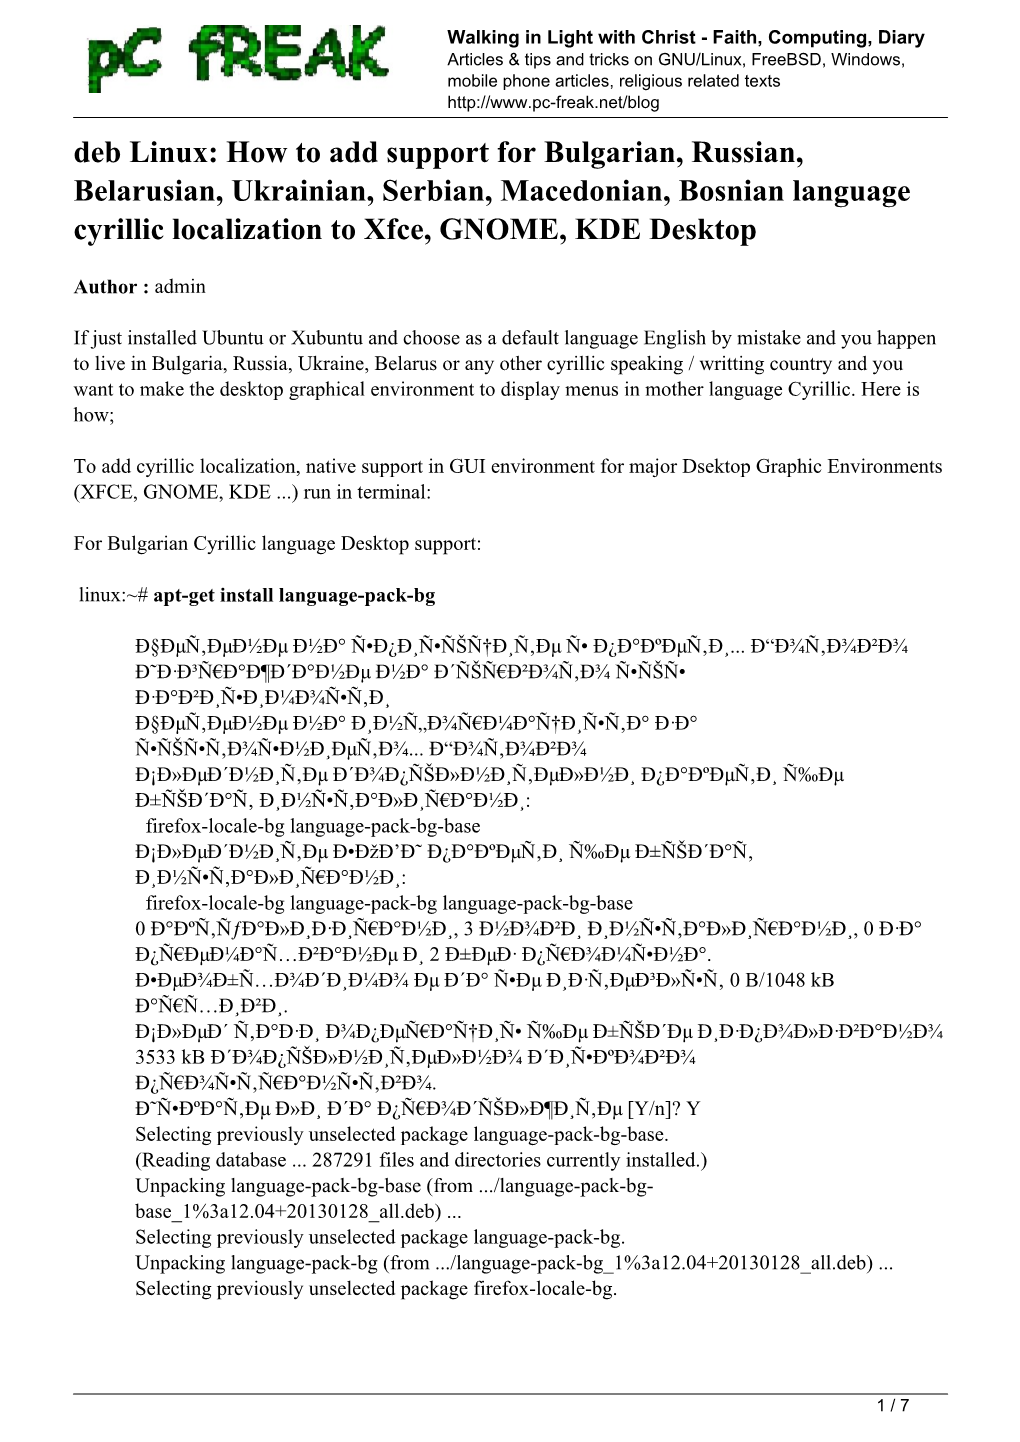 Deb Linux: How to Add Support for Bulgarian, Russian, Belarusian, Ukrainian, Serbian, Macedonian, Bosnian Language Cyrillic Localization to Xfce, GNOME, KDE Desktop